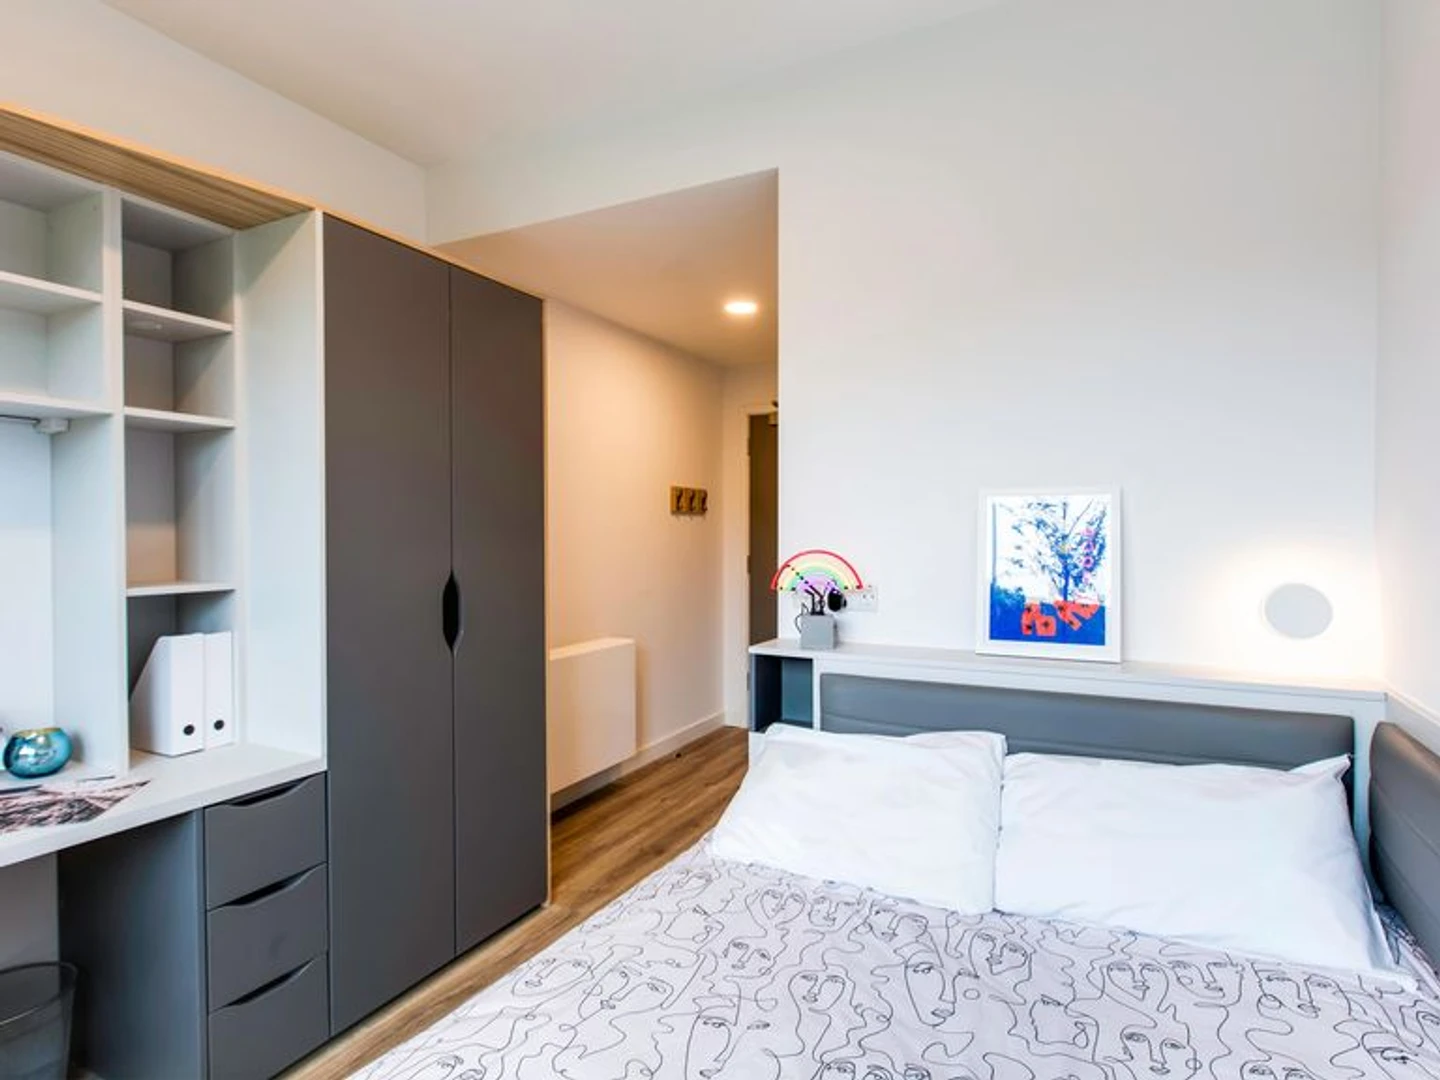 Alquiler de habitaciones por meses en Dublín